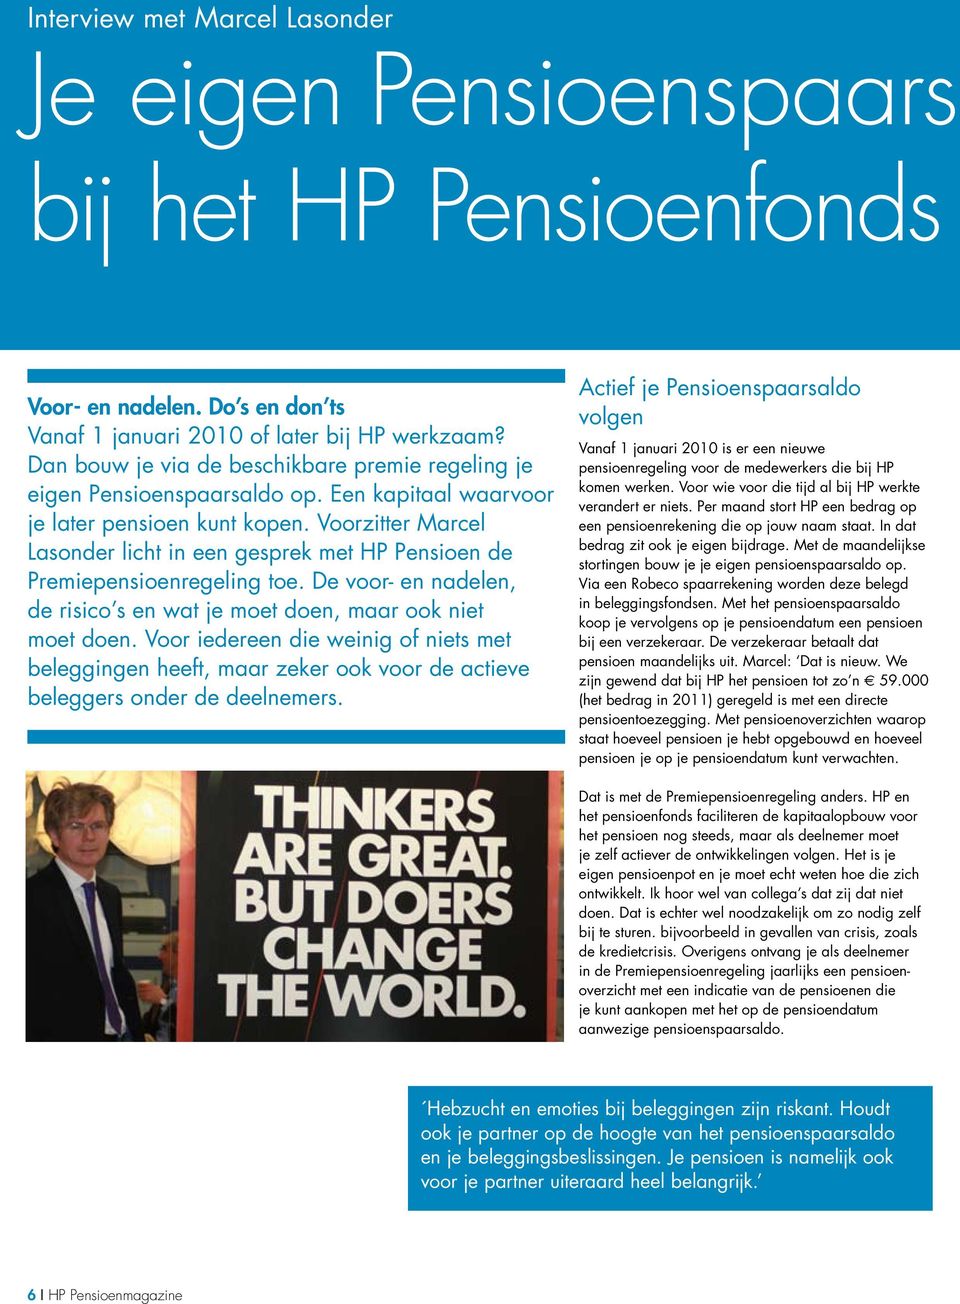 Voorzitter Marcel Lasonder licht in een gesprek met HP Pensioen de Premiepensioenregeling toe. De voor- en nadelen, de risico s en wat je moet doen, maar ook niet moet doen.